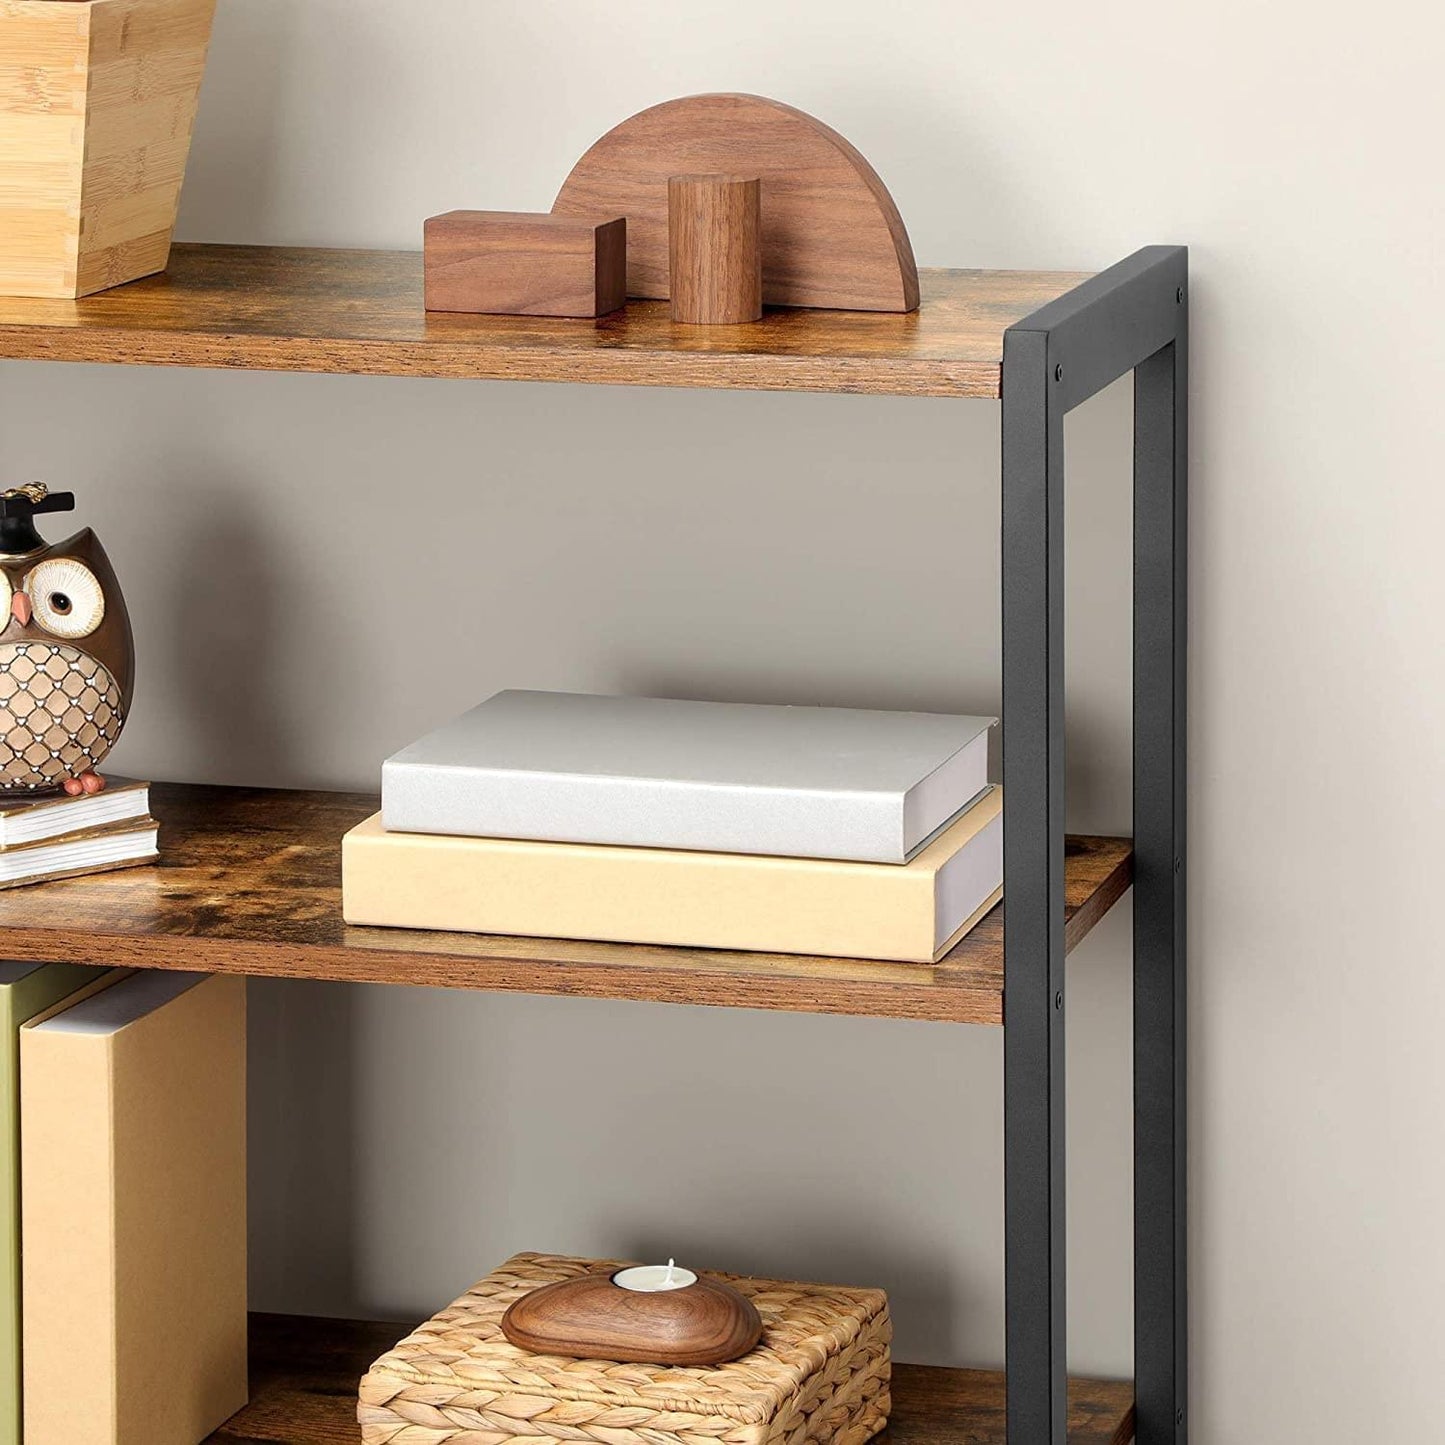 3 Tier Wooden Steel Industrial Style Book Shelf Cabinet Case Display Rack Unit 2 Door HYGRAD BUILT TO SURVIVE